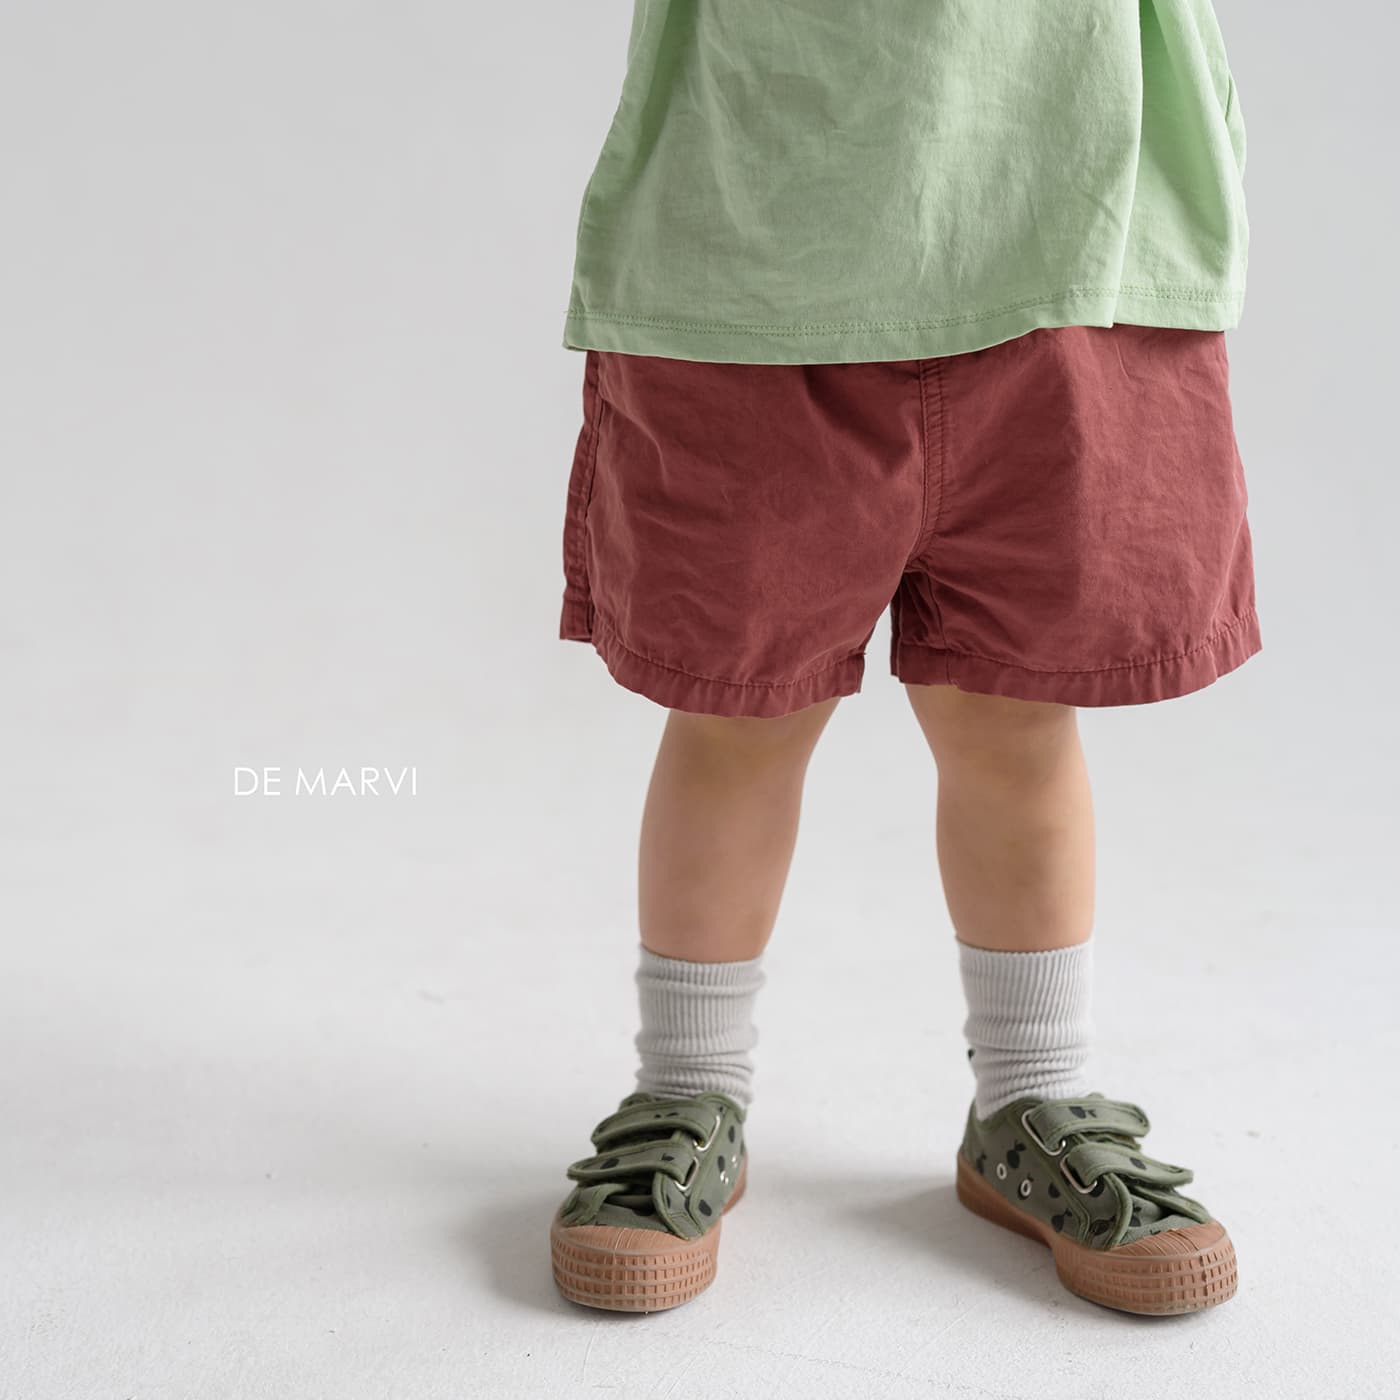 DE MARVI Kids Toddler Soft Cotton Casual Shorts Pants